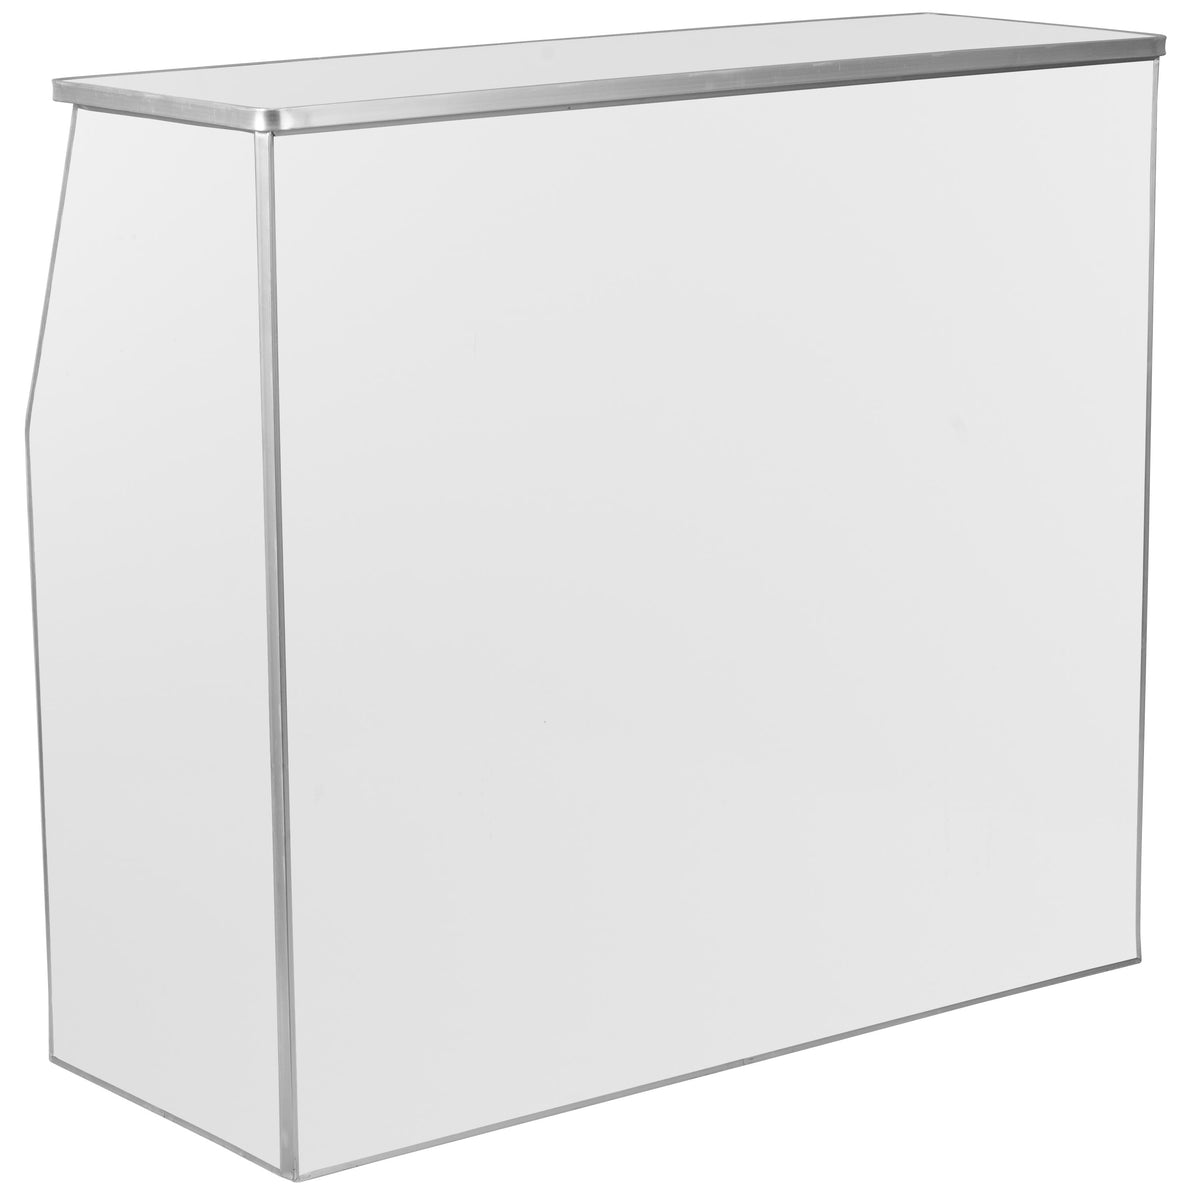 White |#| 4' Black Marble Laminate Foldable Bar - Portable Event Bar - Caterer/Bartendar